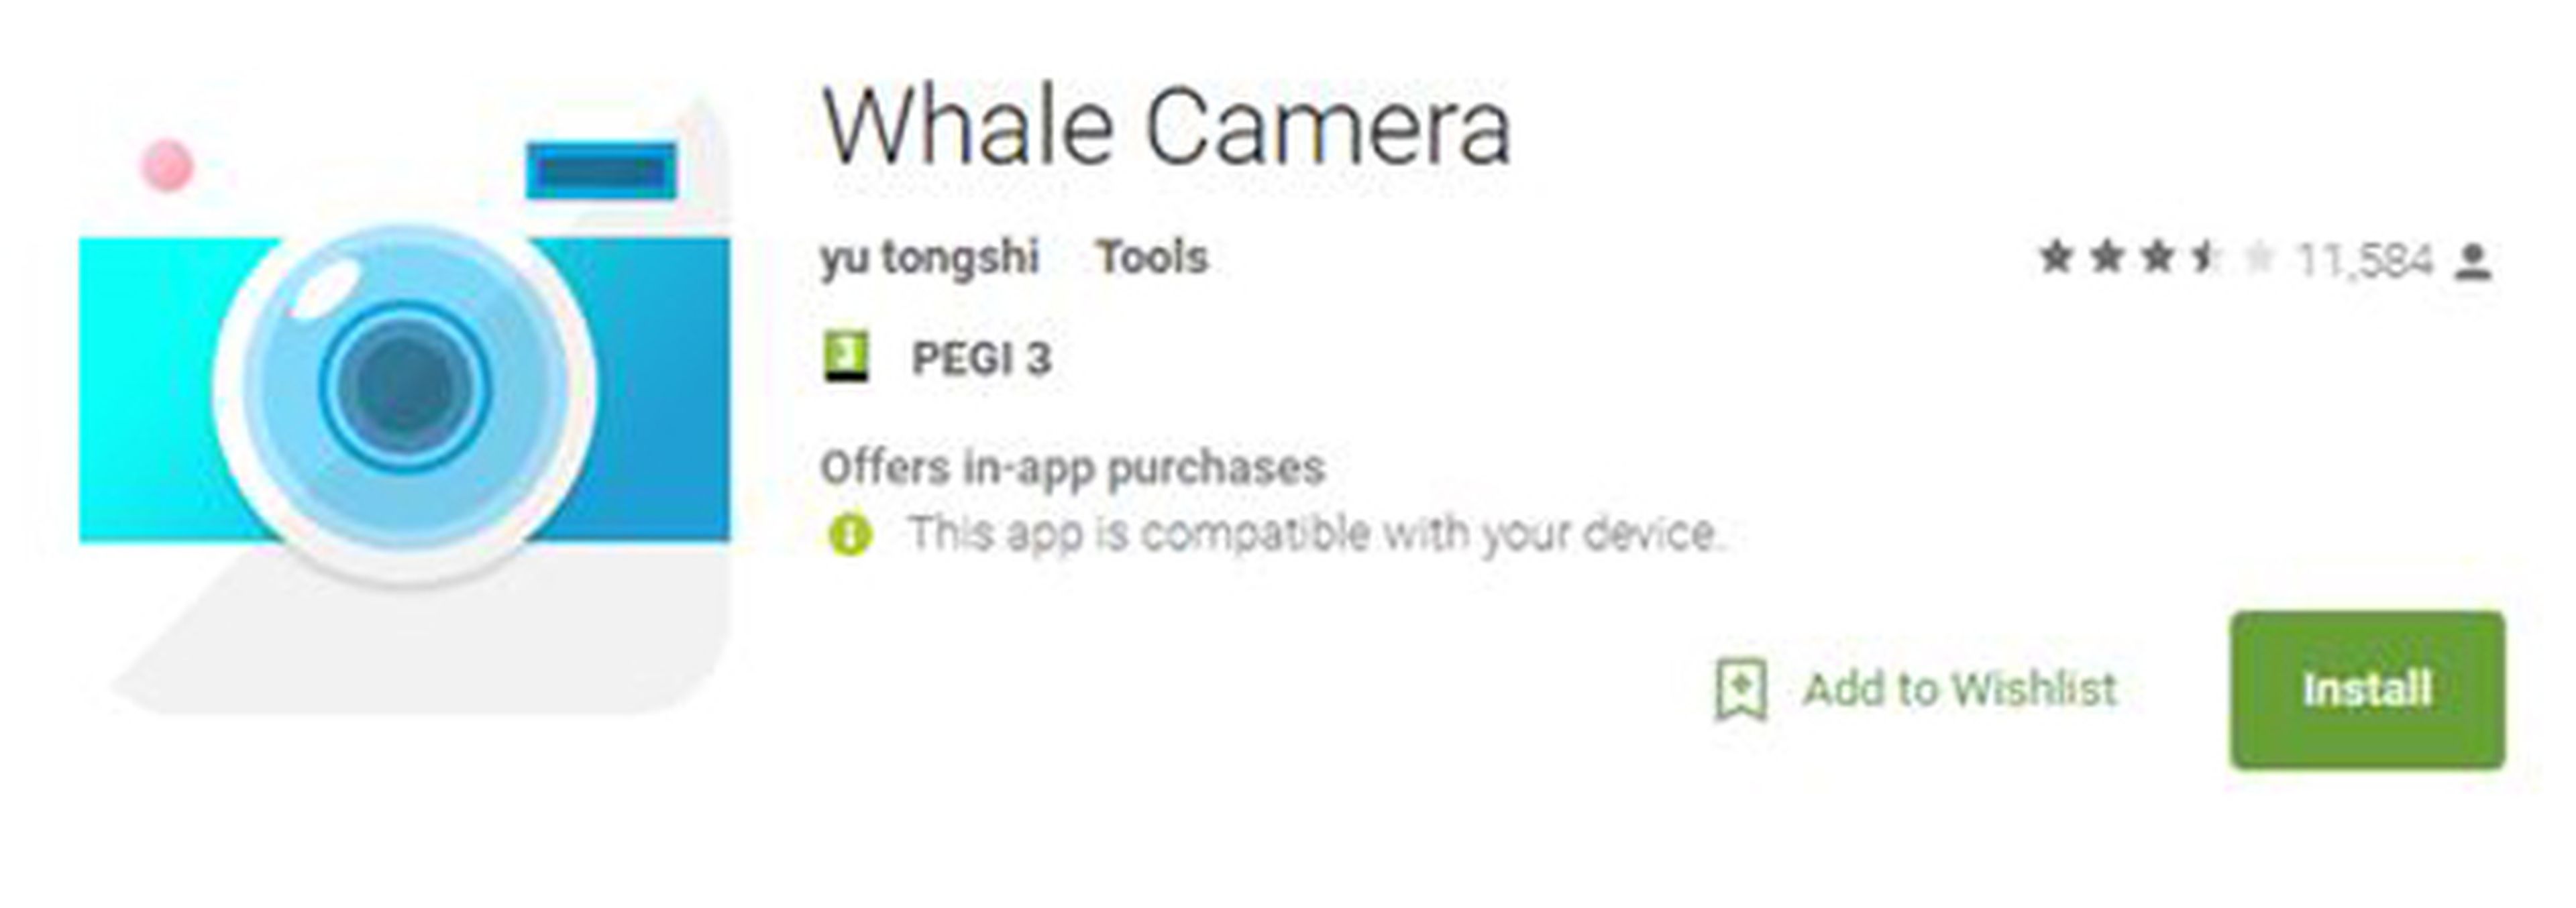 La aplicación de Whale Camera